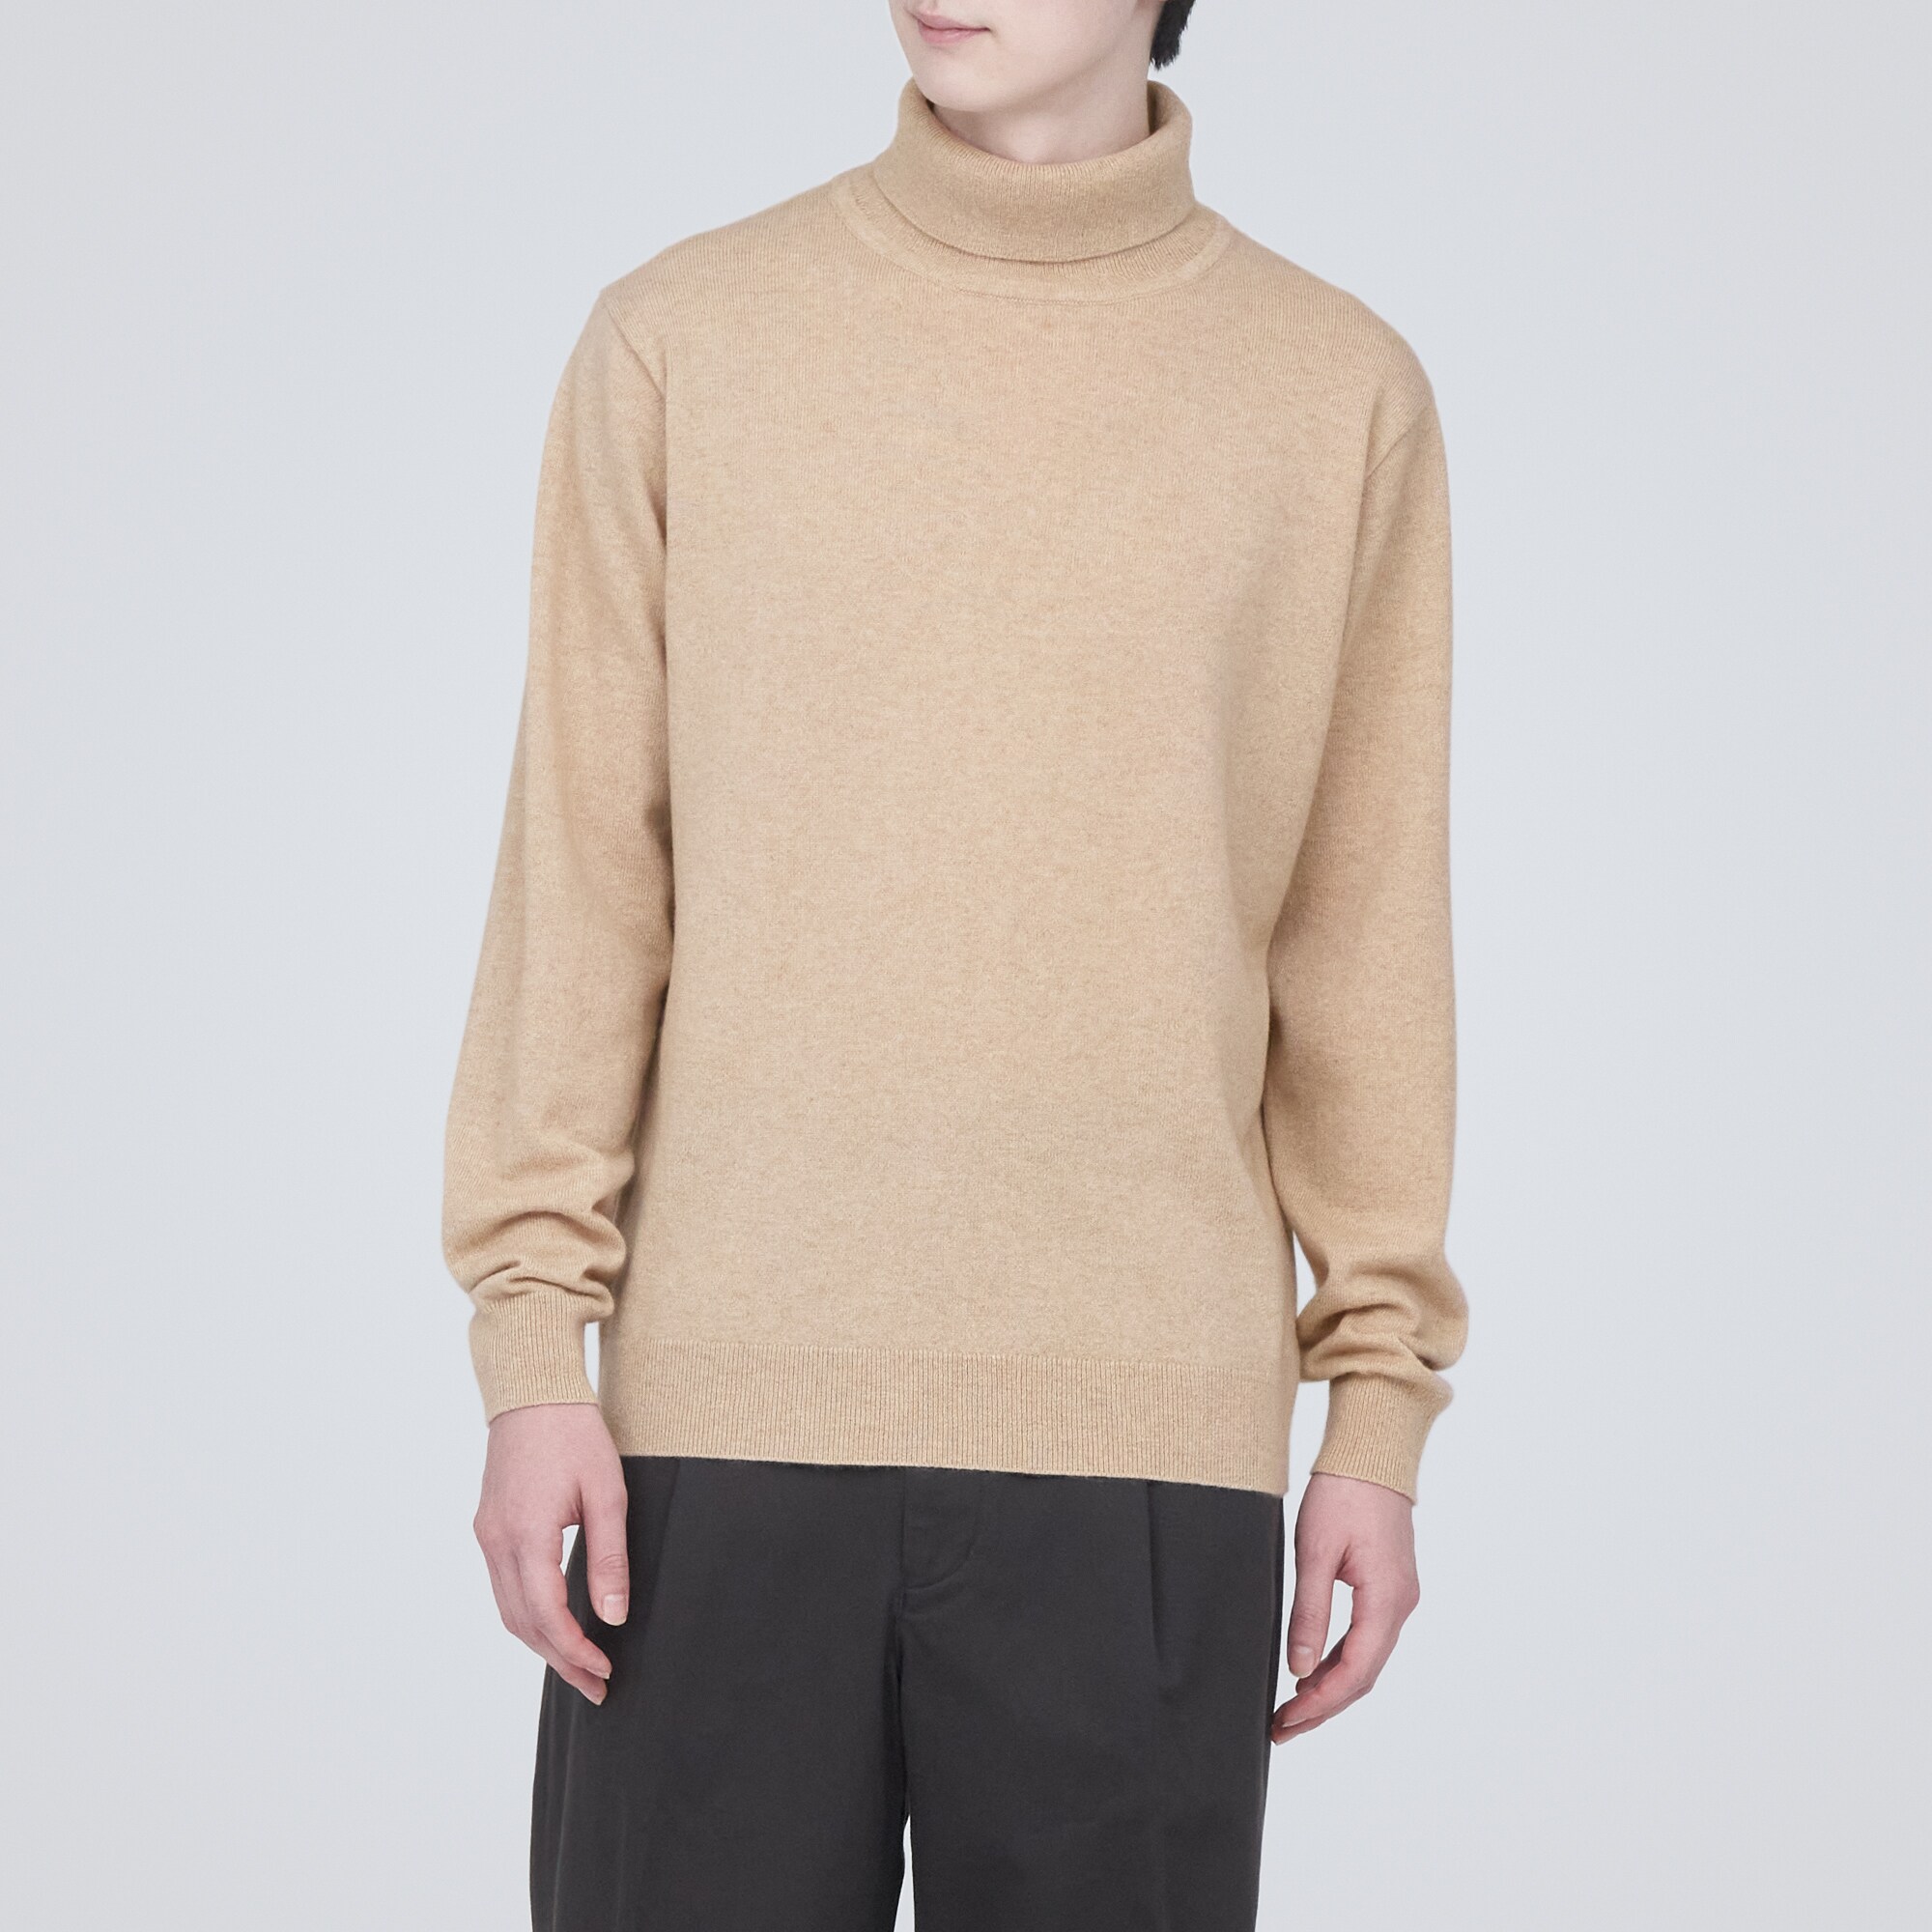 무인양품 일본 자연색 캐시미어 터틀넥 스웨터